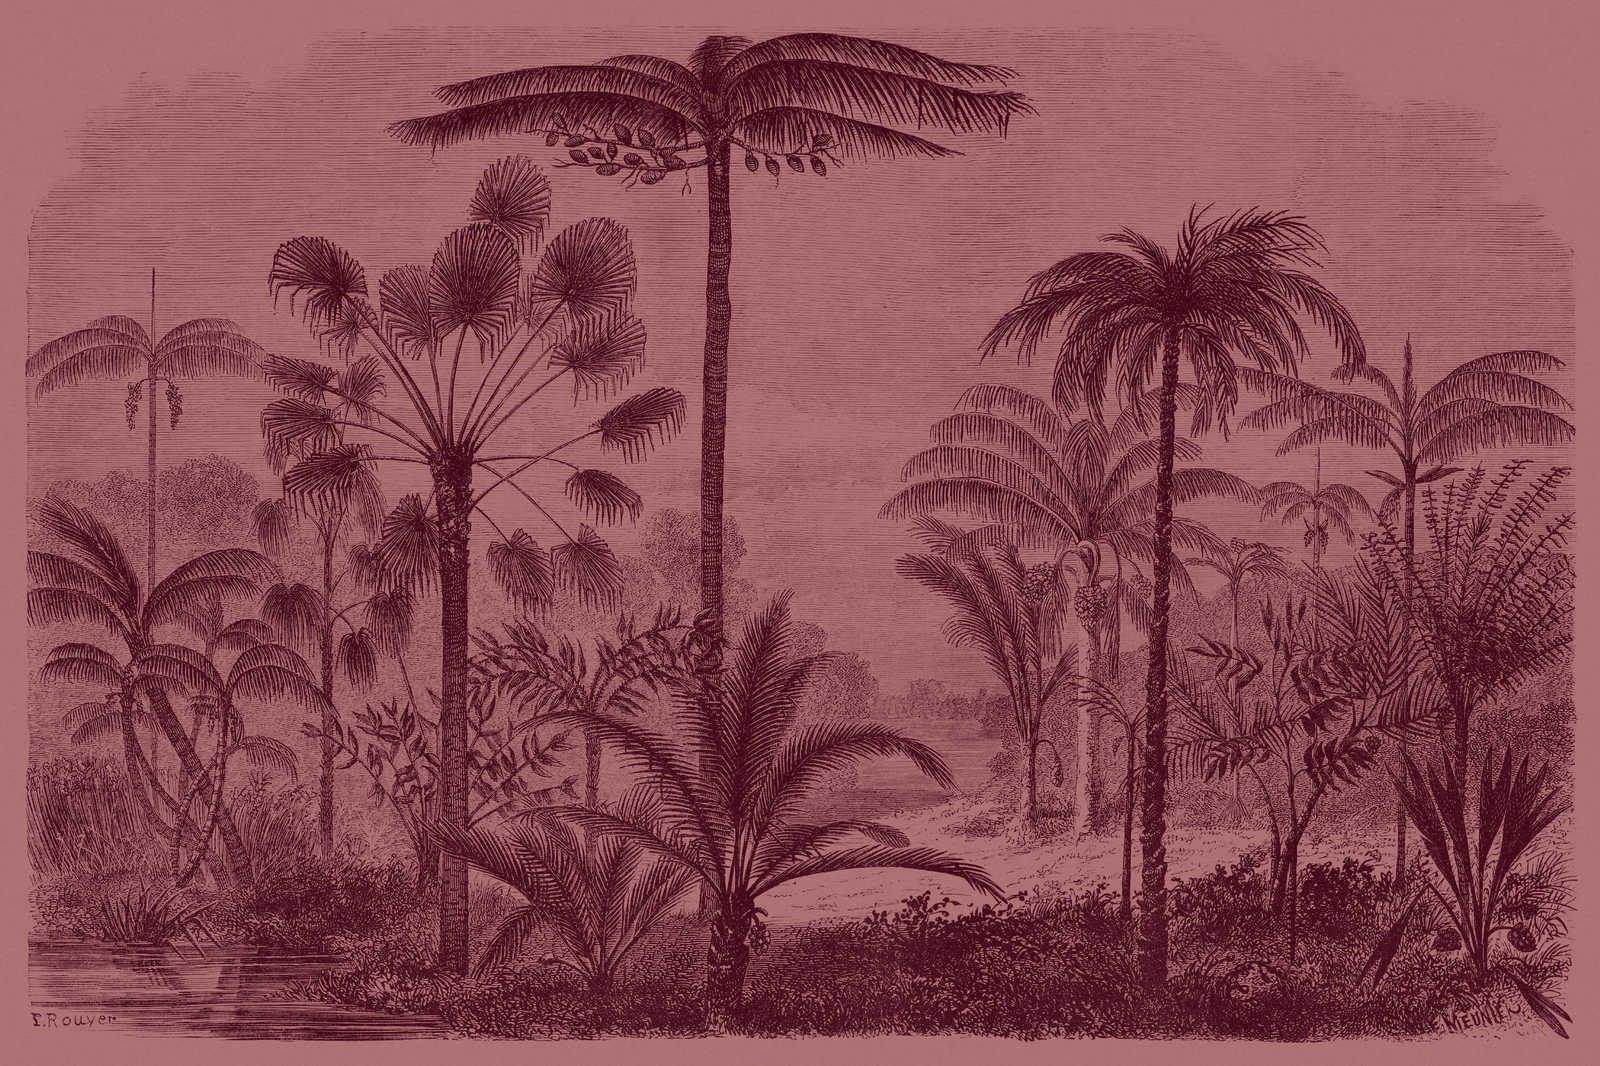             Jurassic 2 - Leinwandbild Dschungelmotiv Kupferstich – 0,90 m x 0,60 m
        